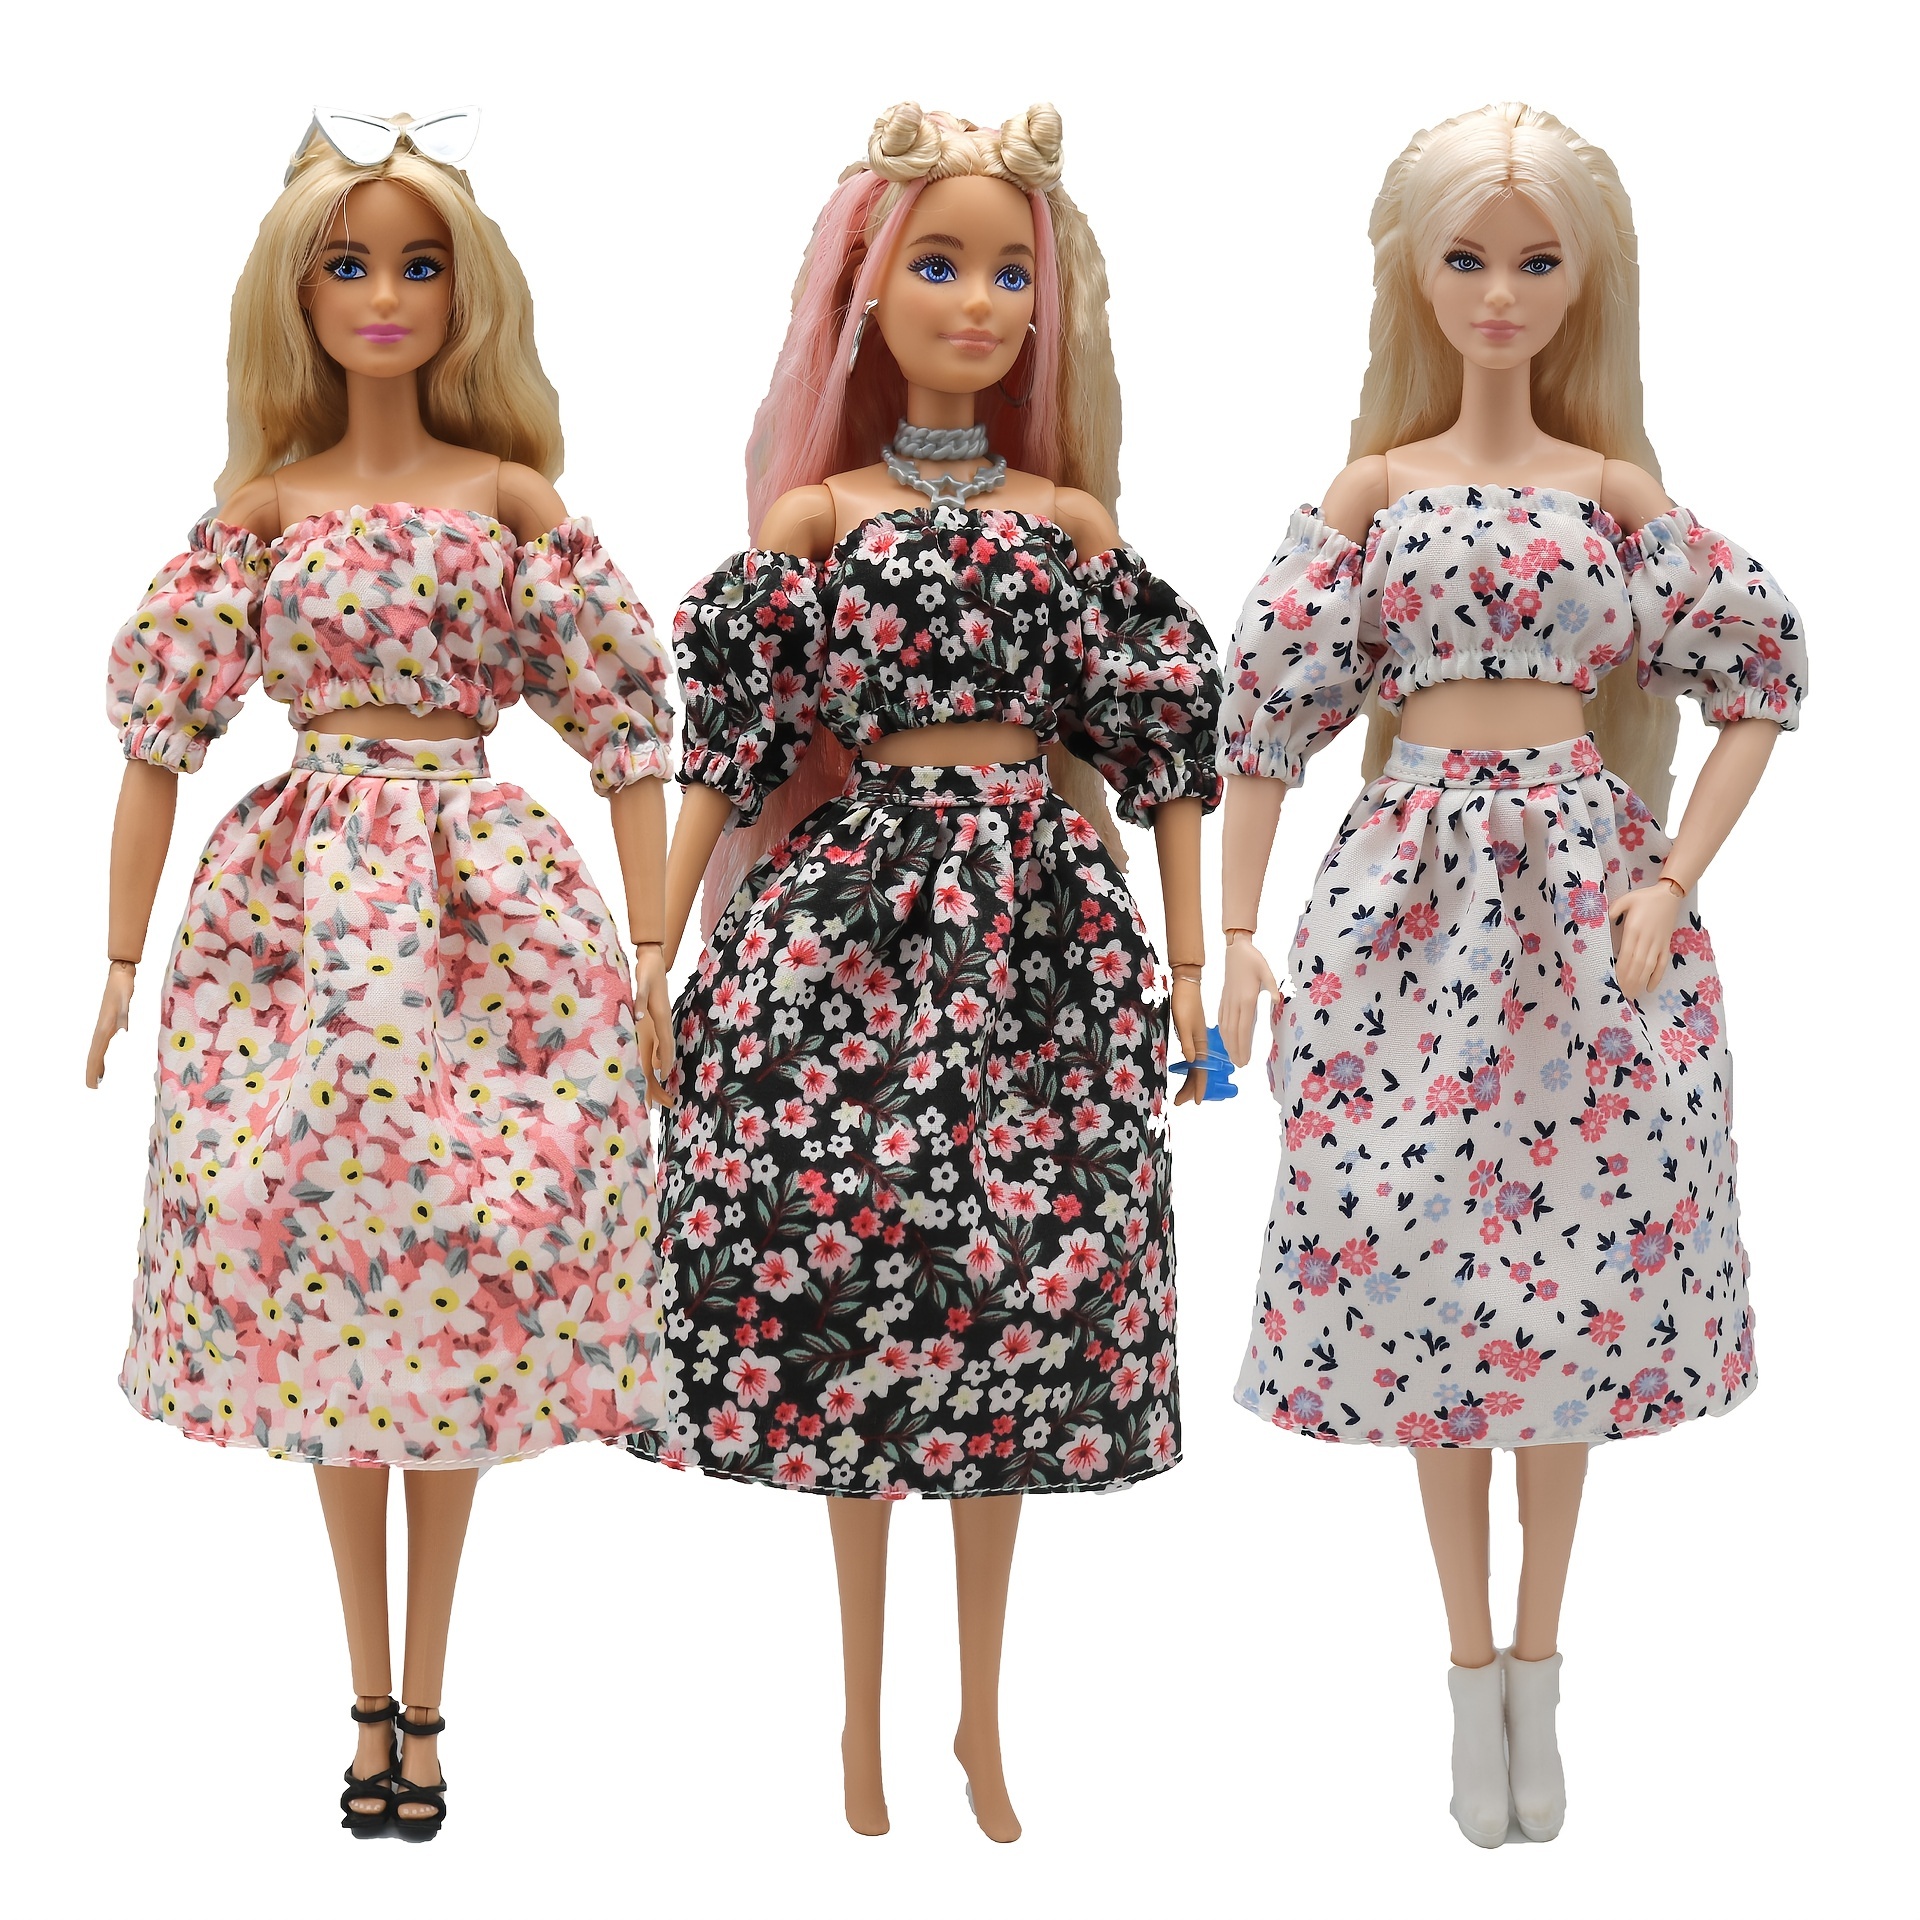 Roupa de boneca barbie original, vestidos, acessórios, conjuntos de roupas,  marca superior, brinquedos para meninas, presentes